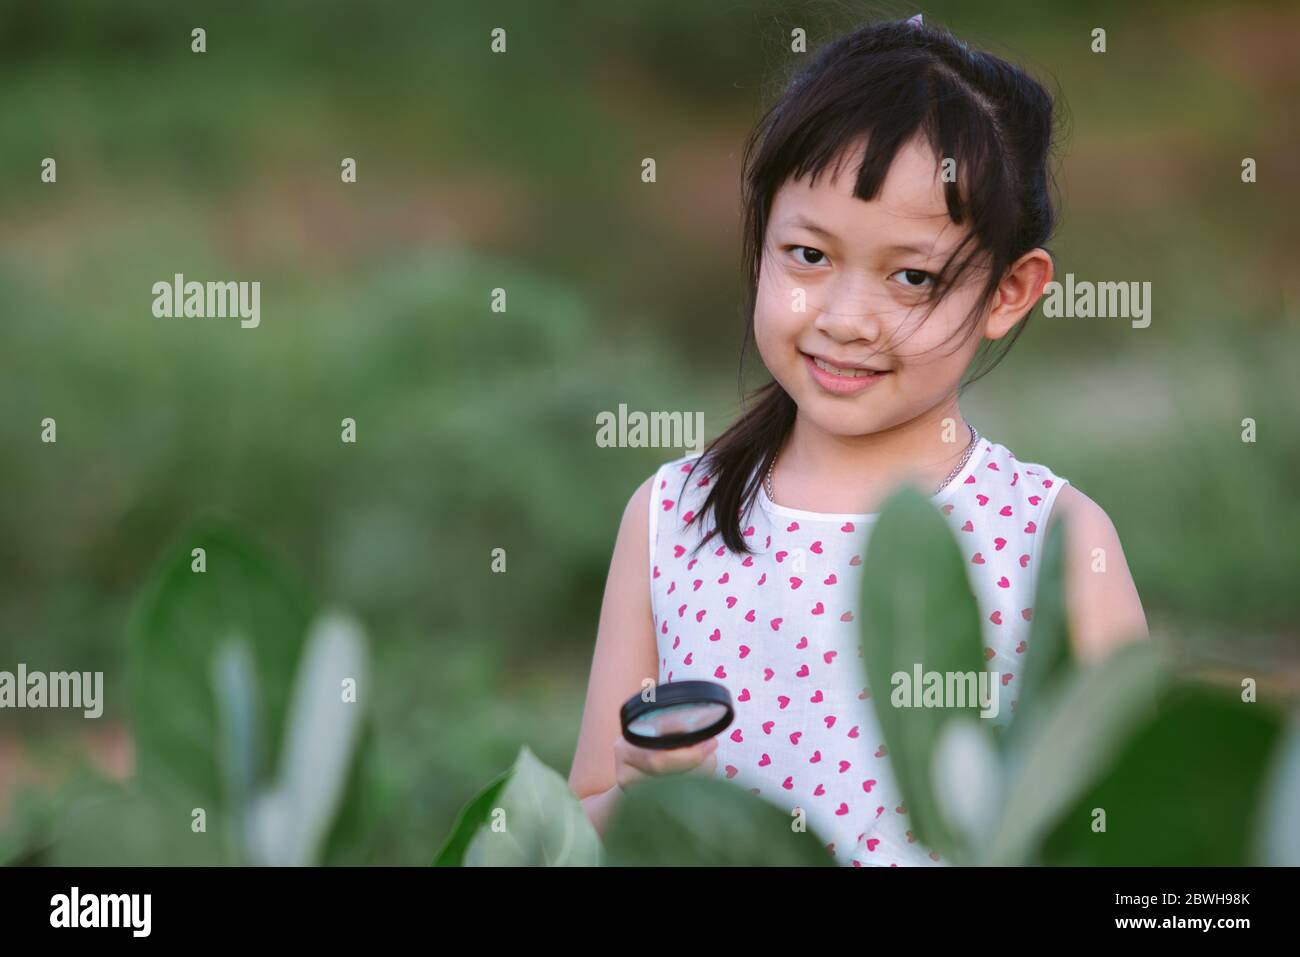 Glücklich asiatisch kleines Kind Mädchen, das durch eine Lupe auf grünen Blatt Baum im Park Stockfoto